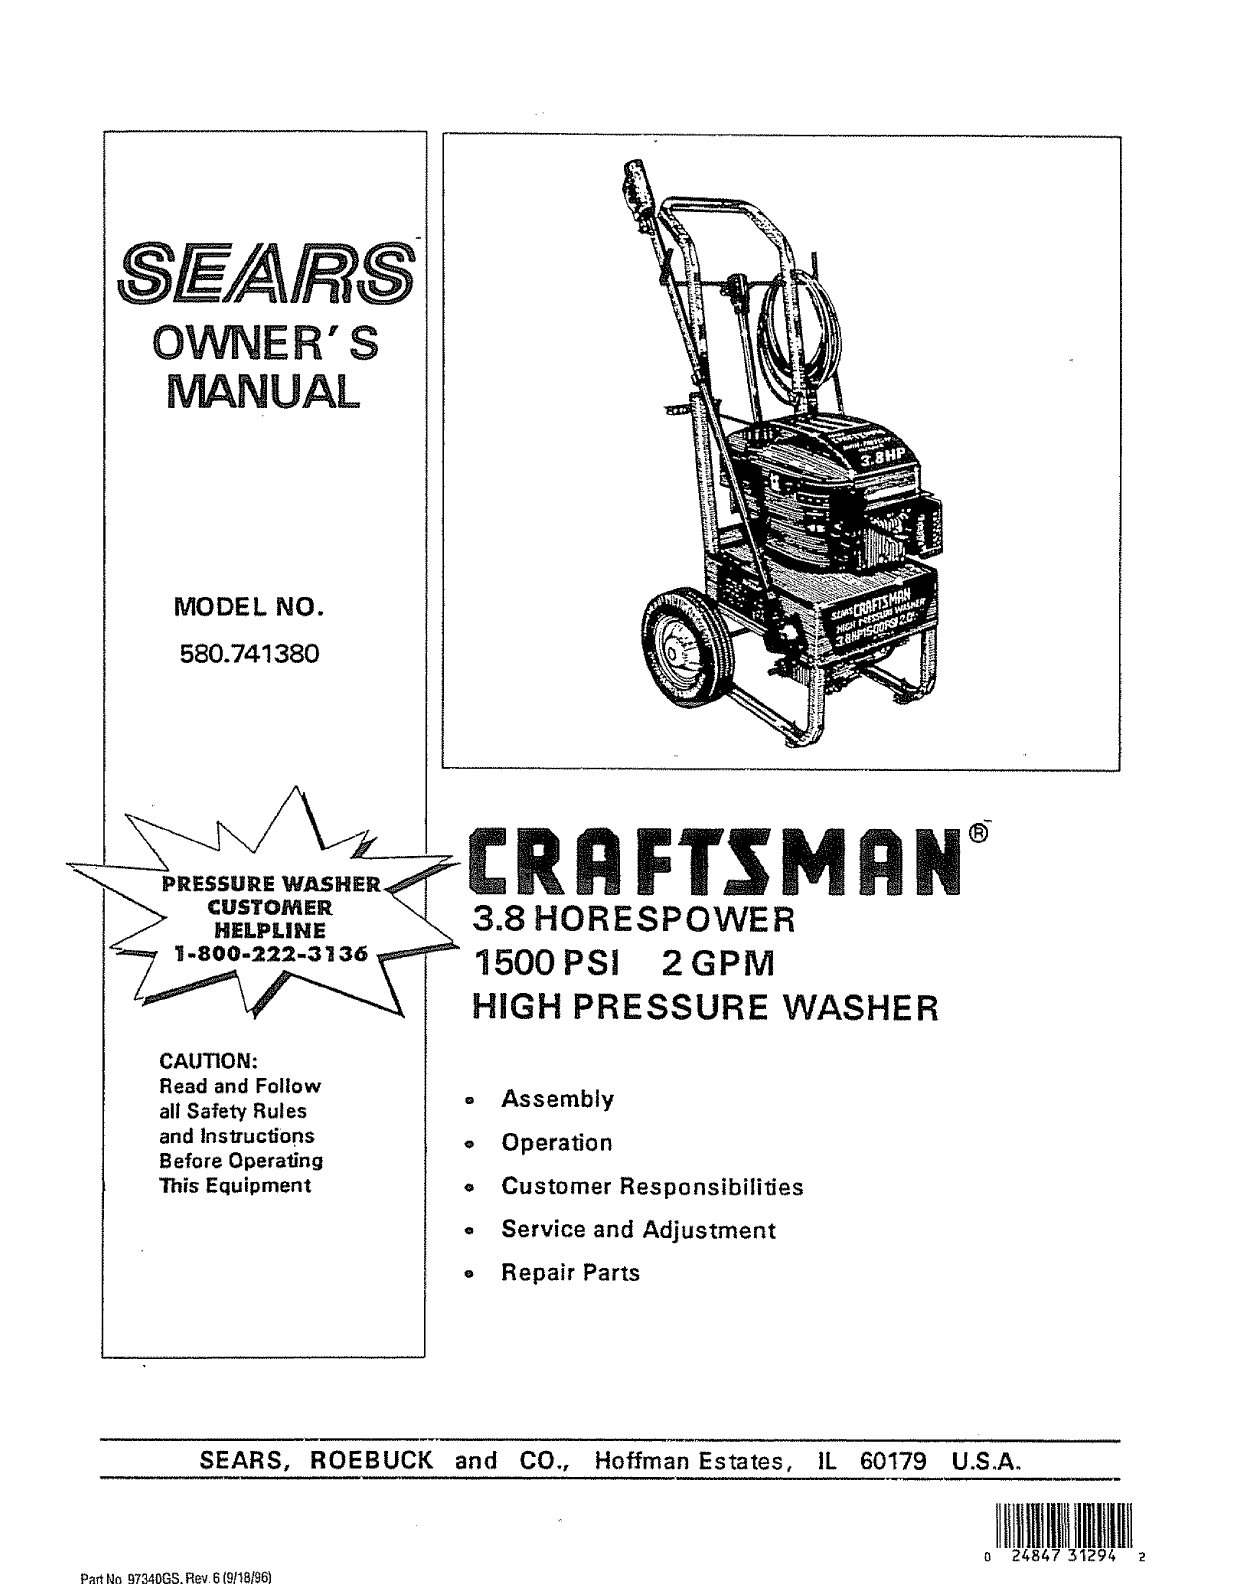 Craftsman 675 power washer manual